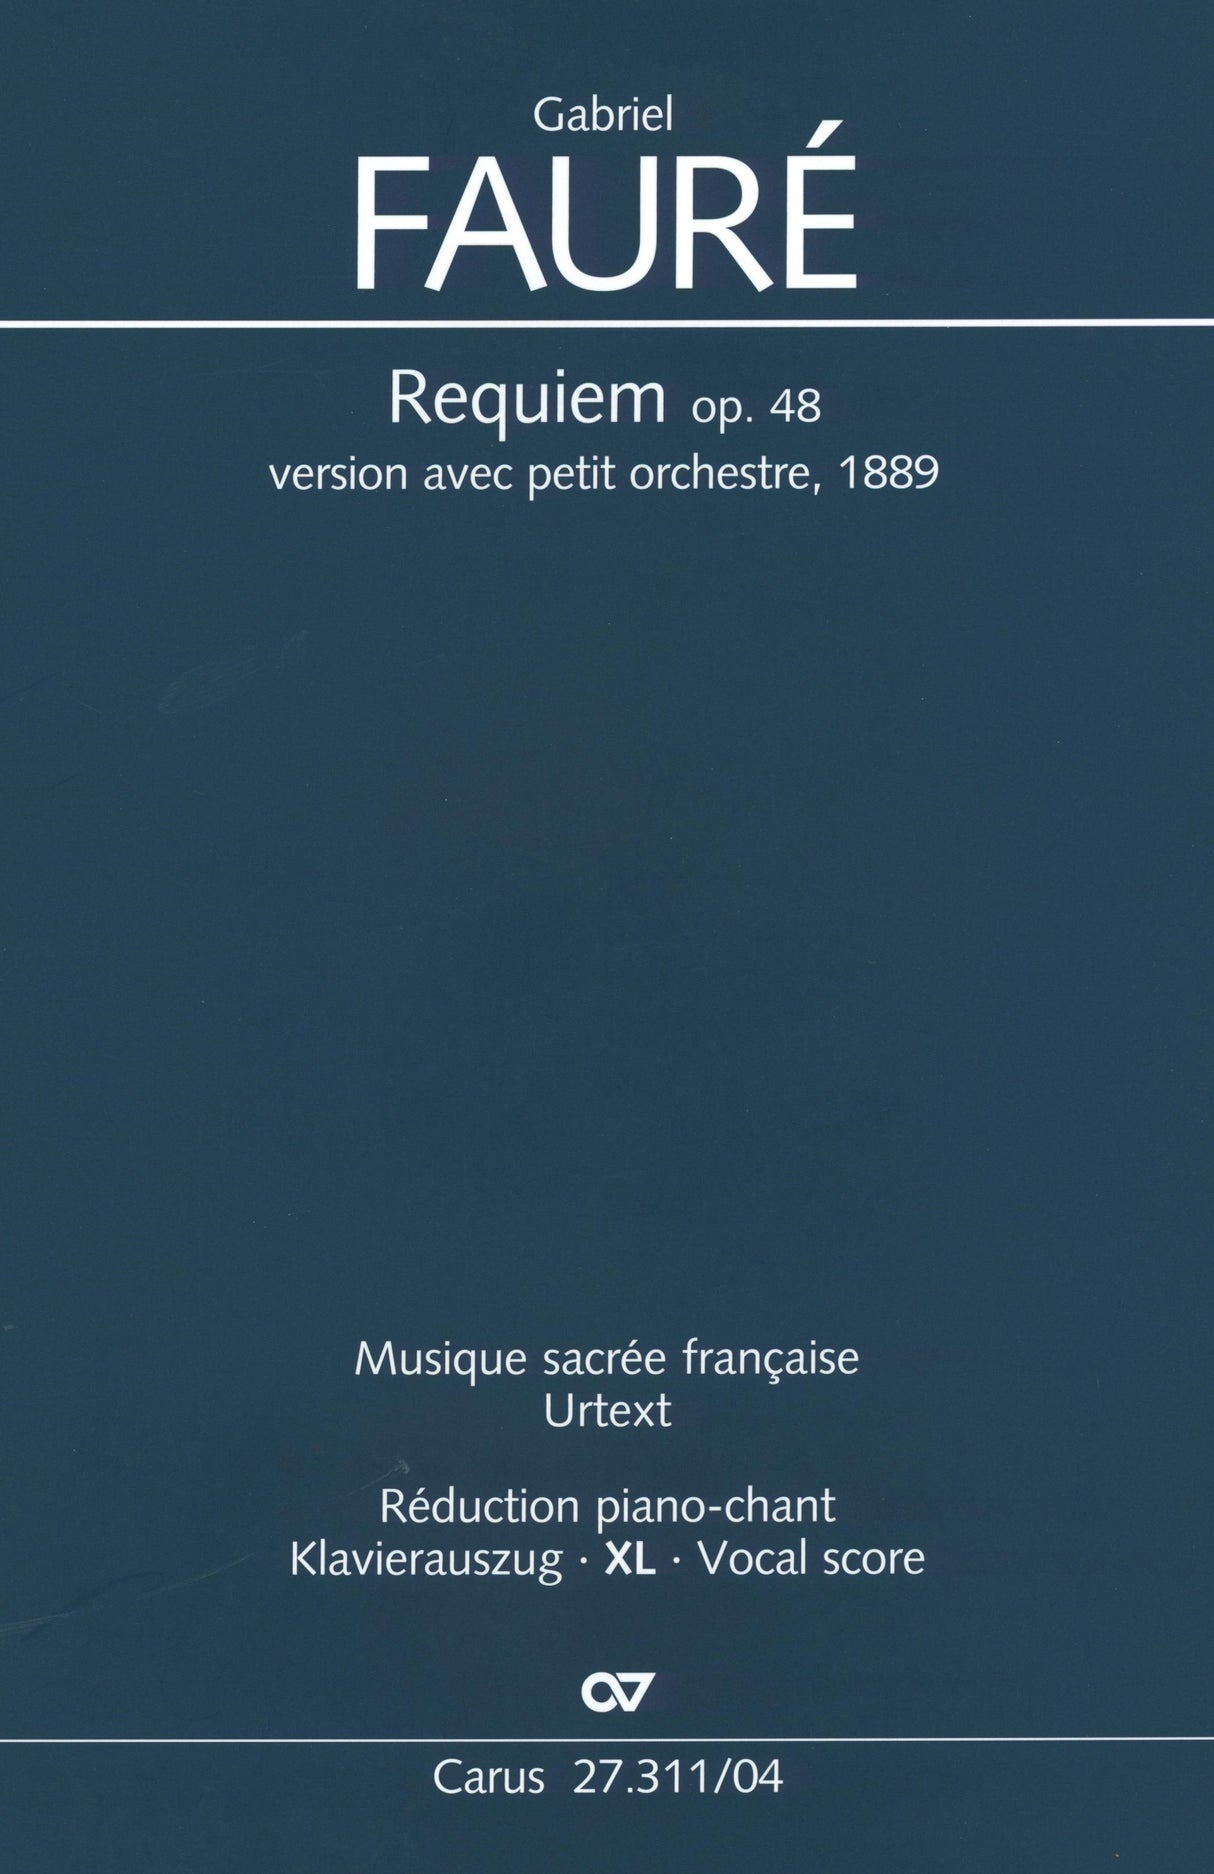 Fauré: Requiem, Op. 48 (Version of 1889)